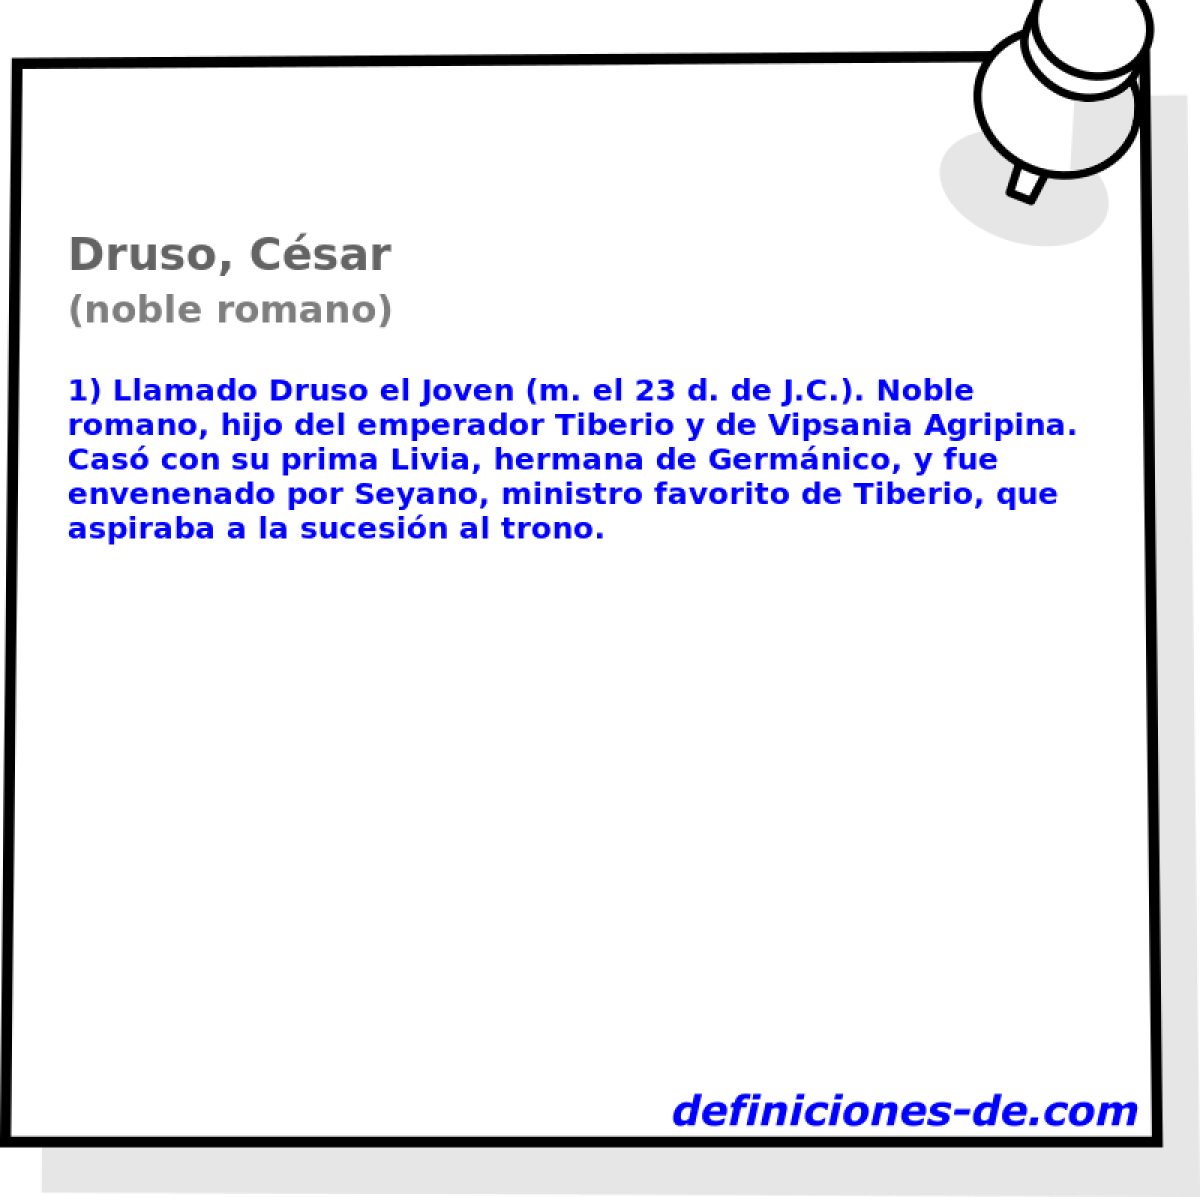 Druso, Csar (noble romano)